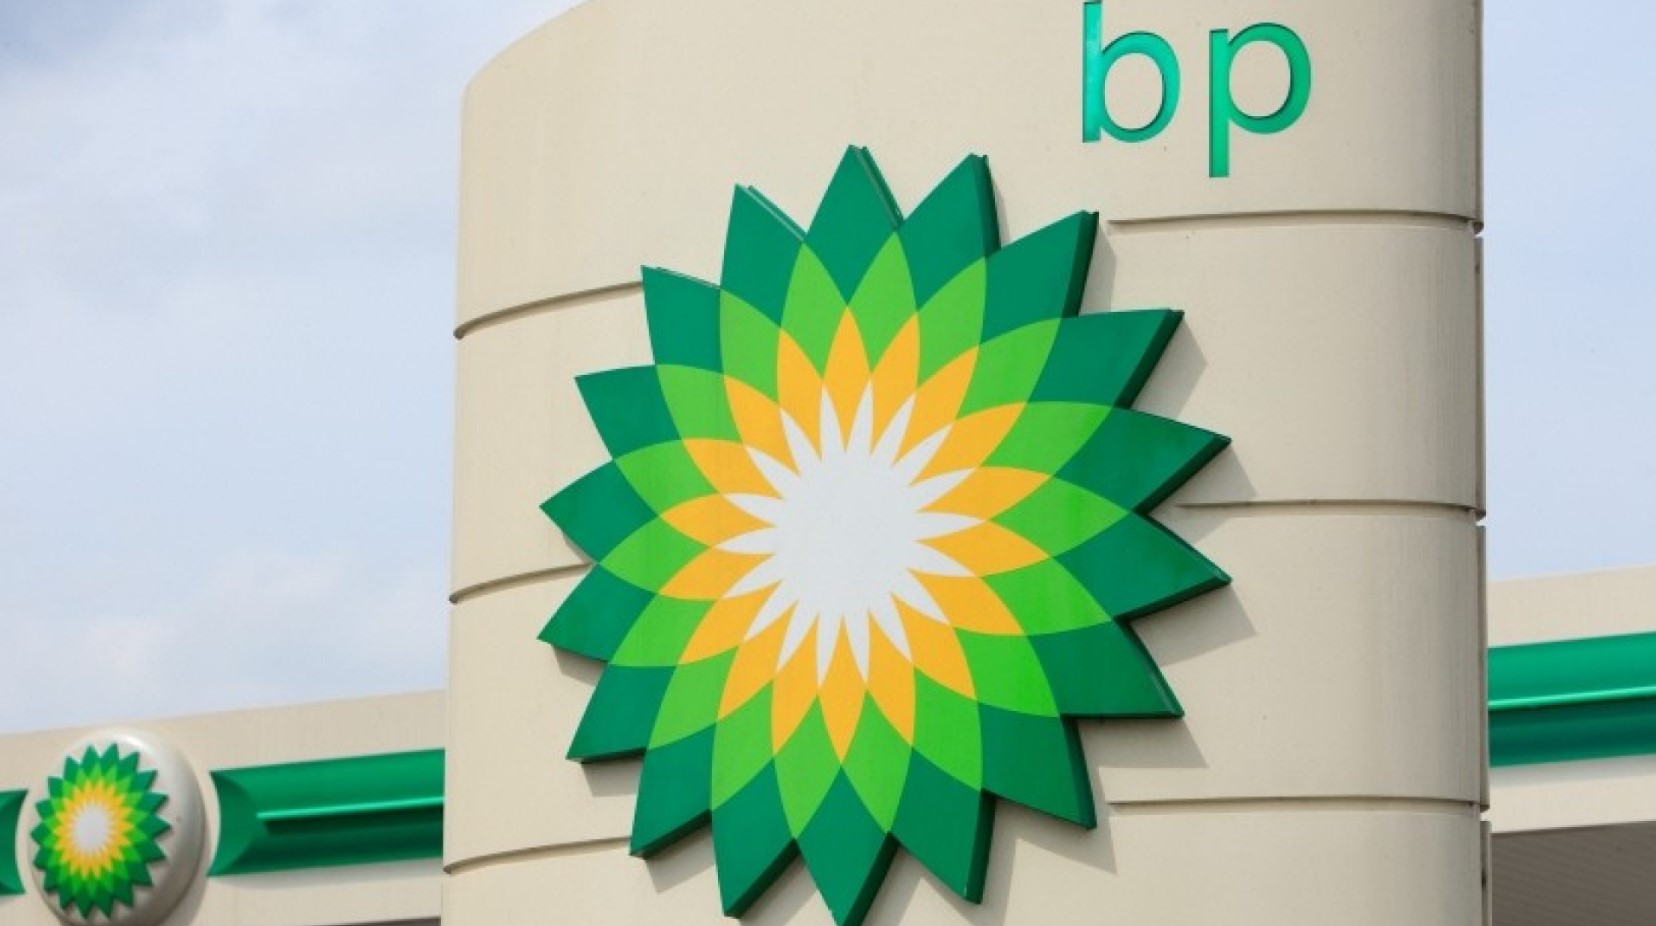 A bp facility with the company's logo